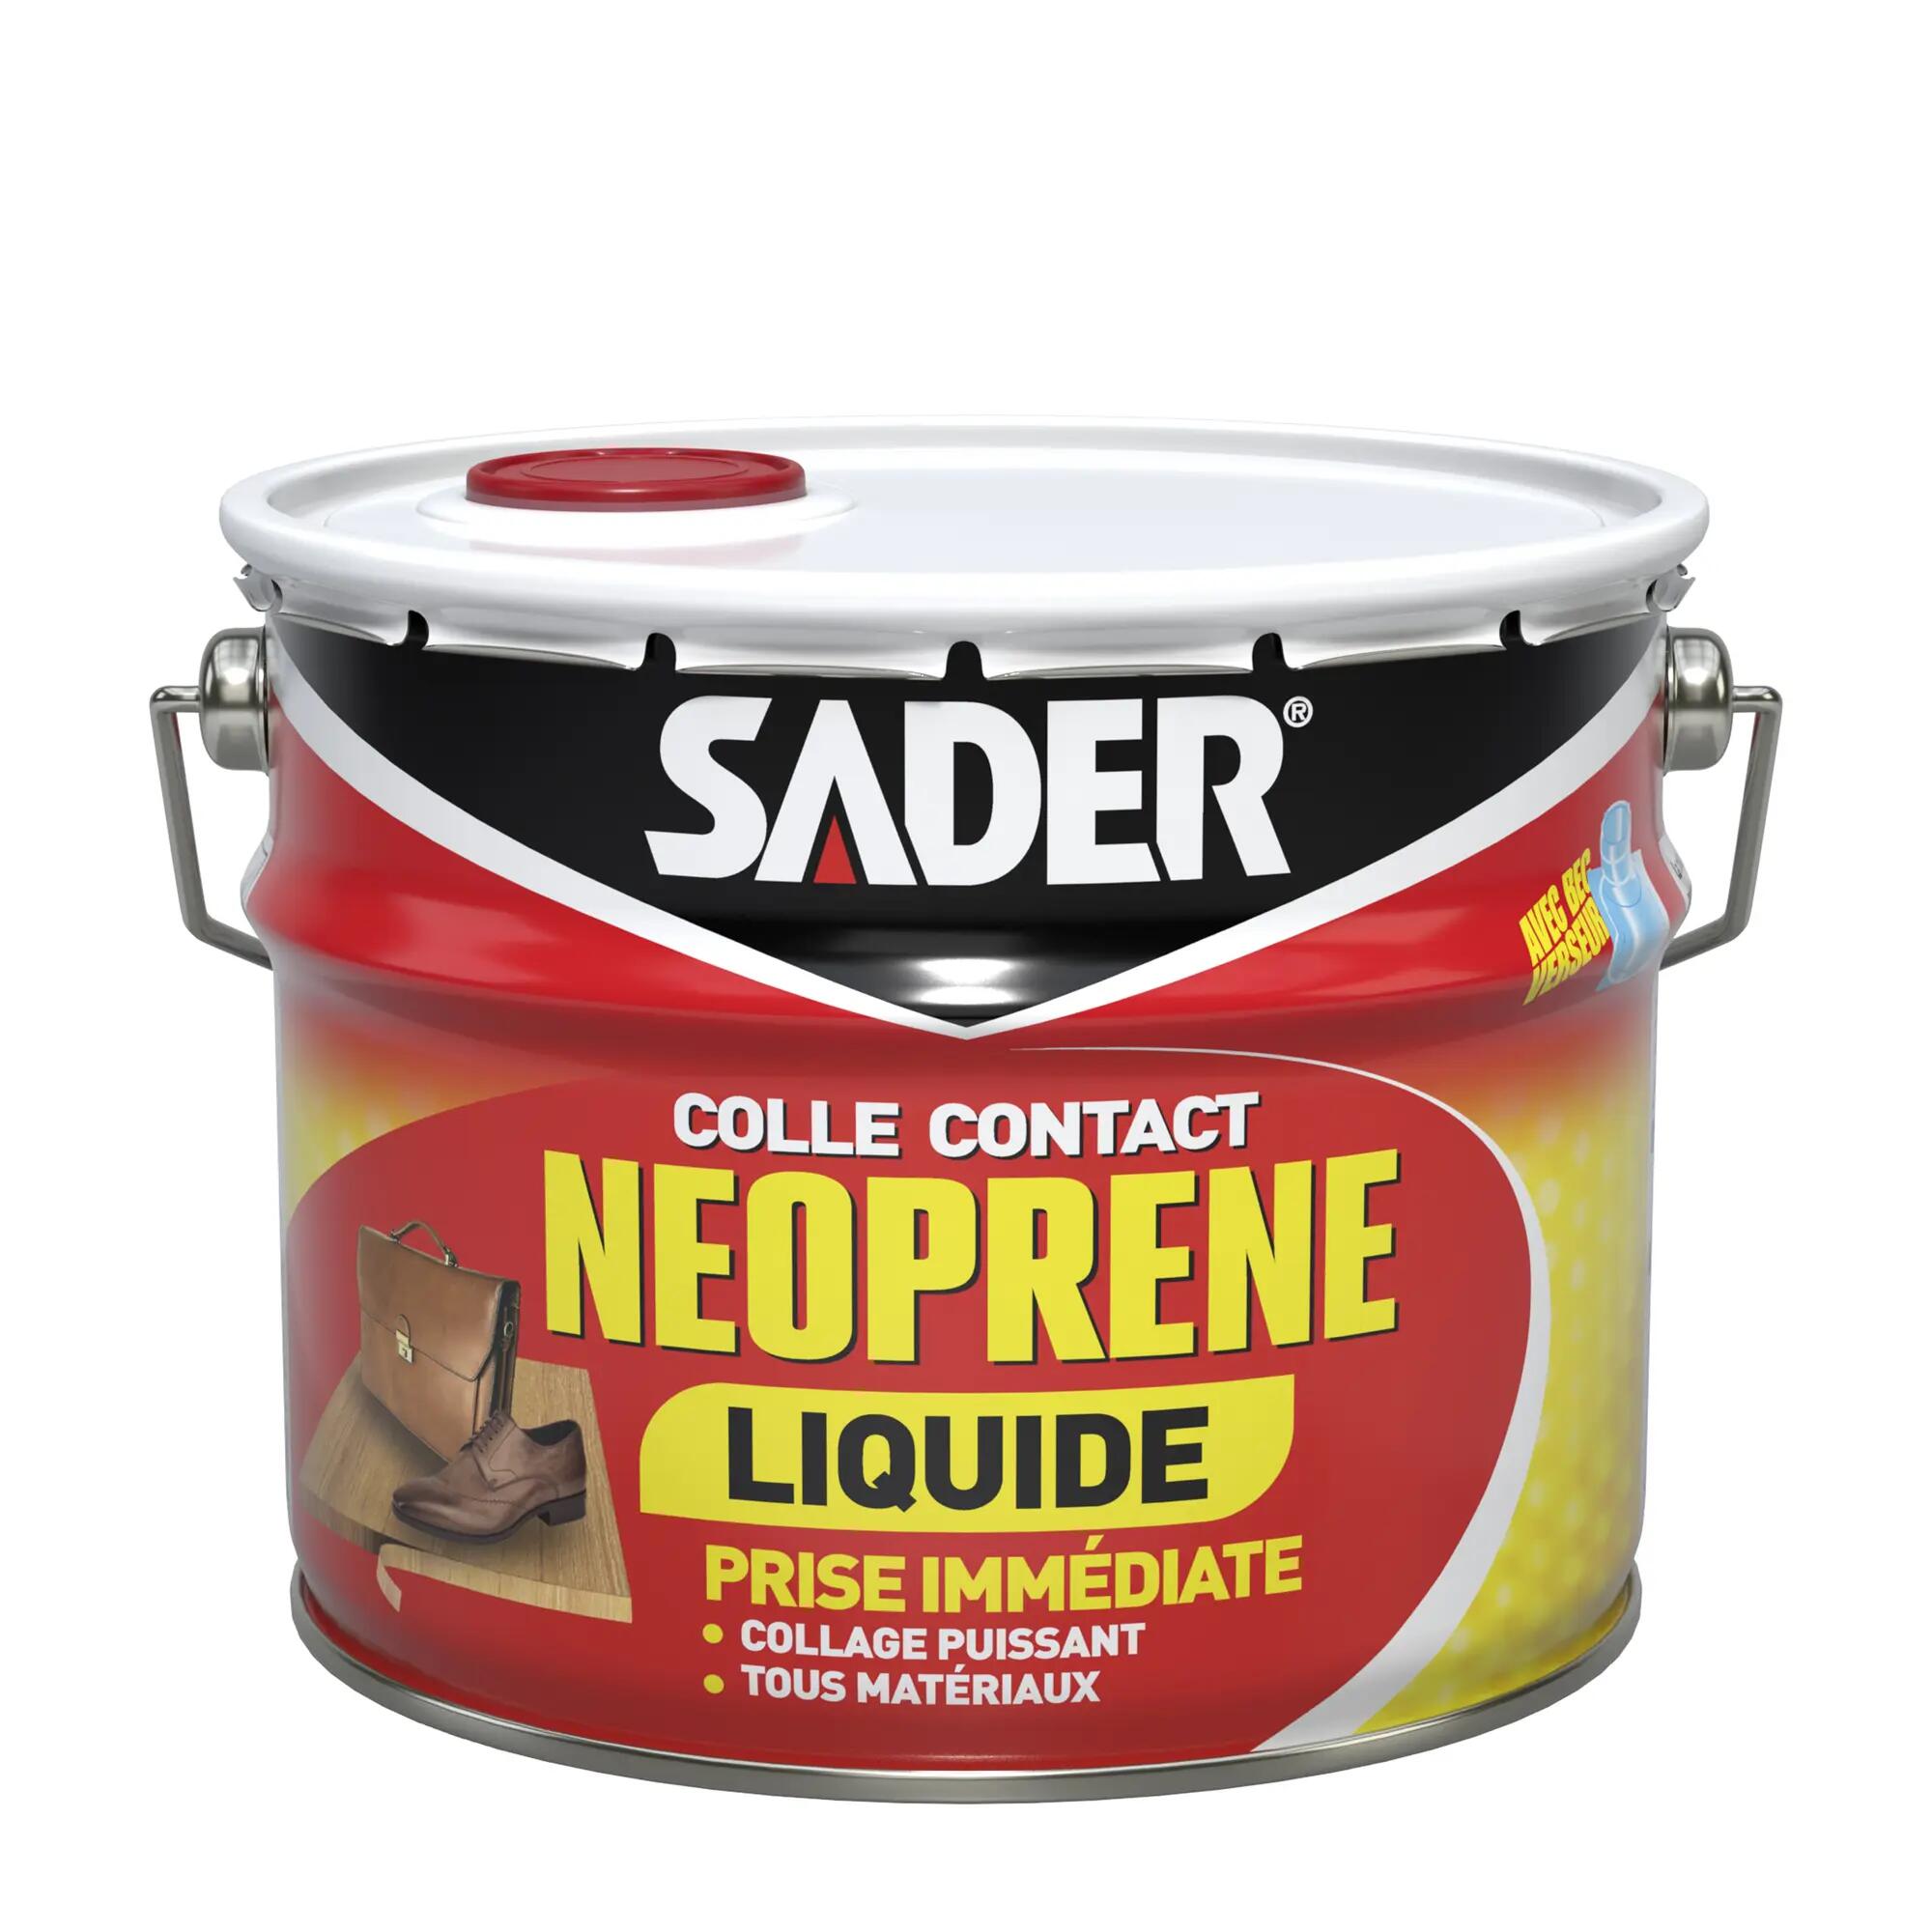 Colle néoprène liquide Multi-usages SADER, 2,5 l